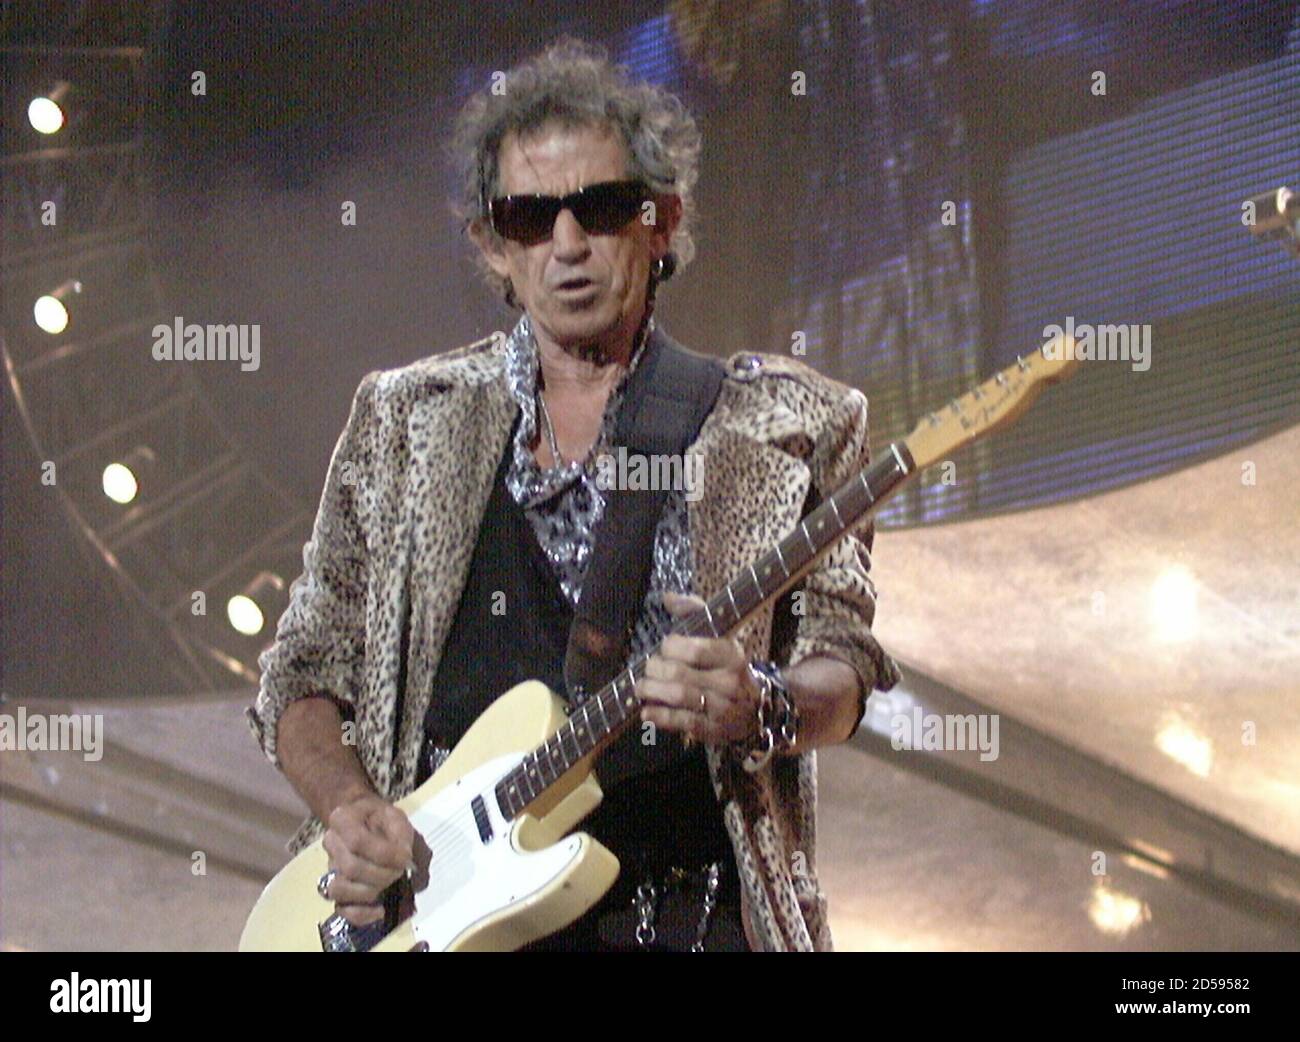 Keith Richard von den Rolling Stones tritt am 9. Juli beim Open Air  Festival 'Out in the Green' in Frauenfeld auf. Mehr als 60'000 Fans  besuchten die einzige Aufführung der Stones Show '